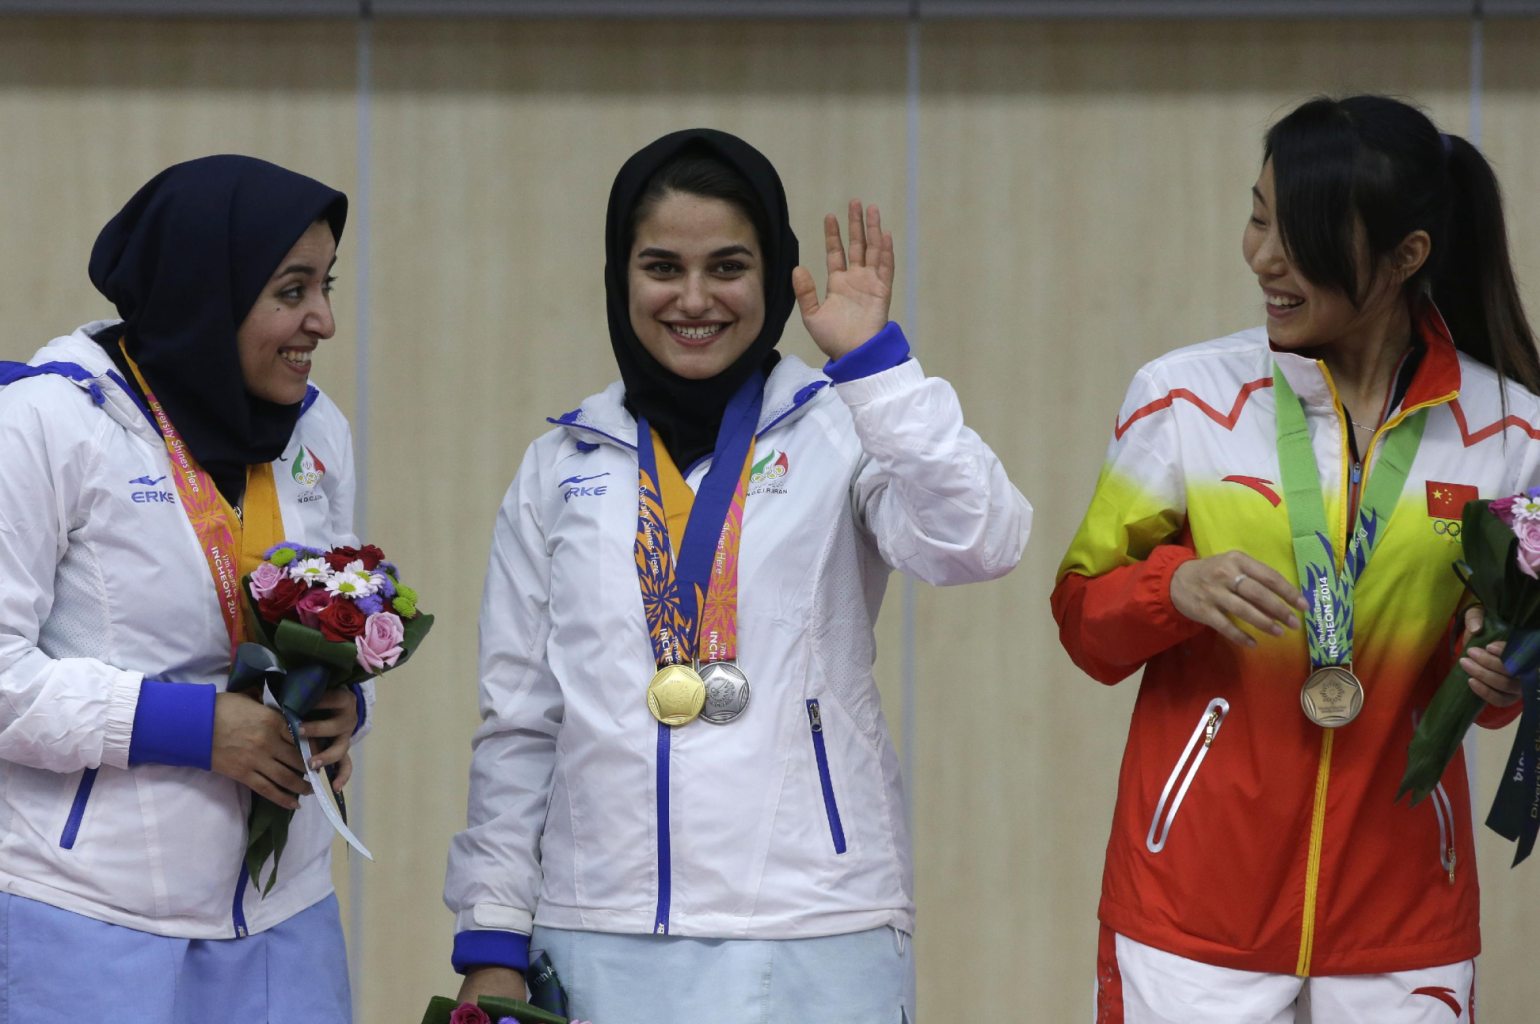 عکس روز: نجمه خدمتی و نرجس امام قلی نژاد مدال آورندگان بازی های آسیایی